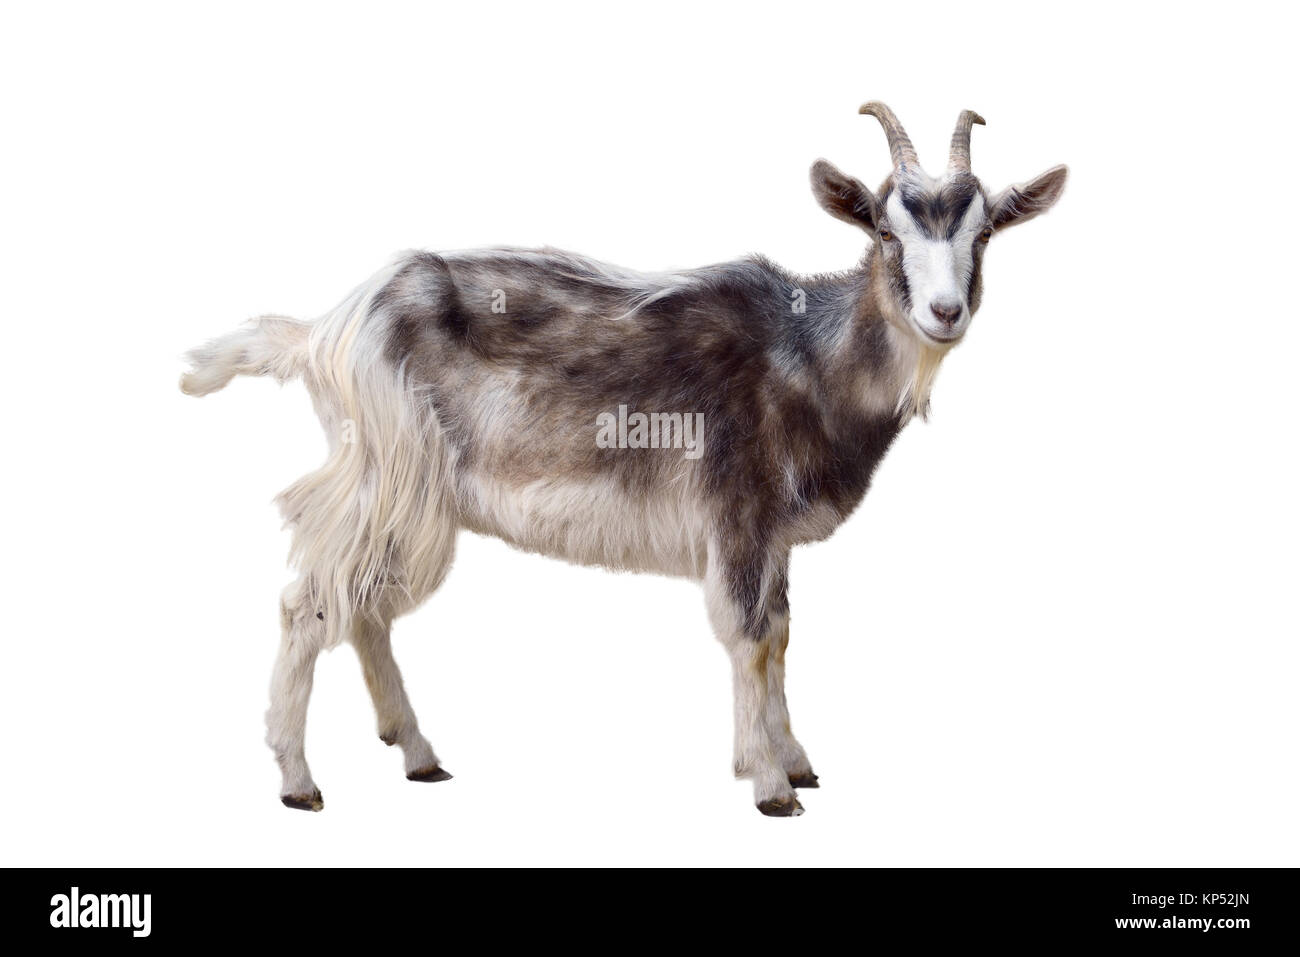 Motley goat isolated on white background Stock Photo